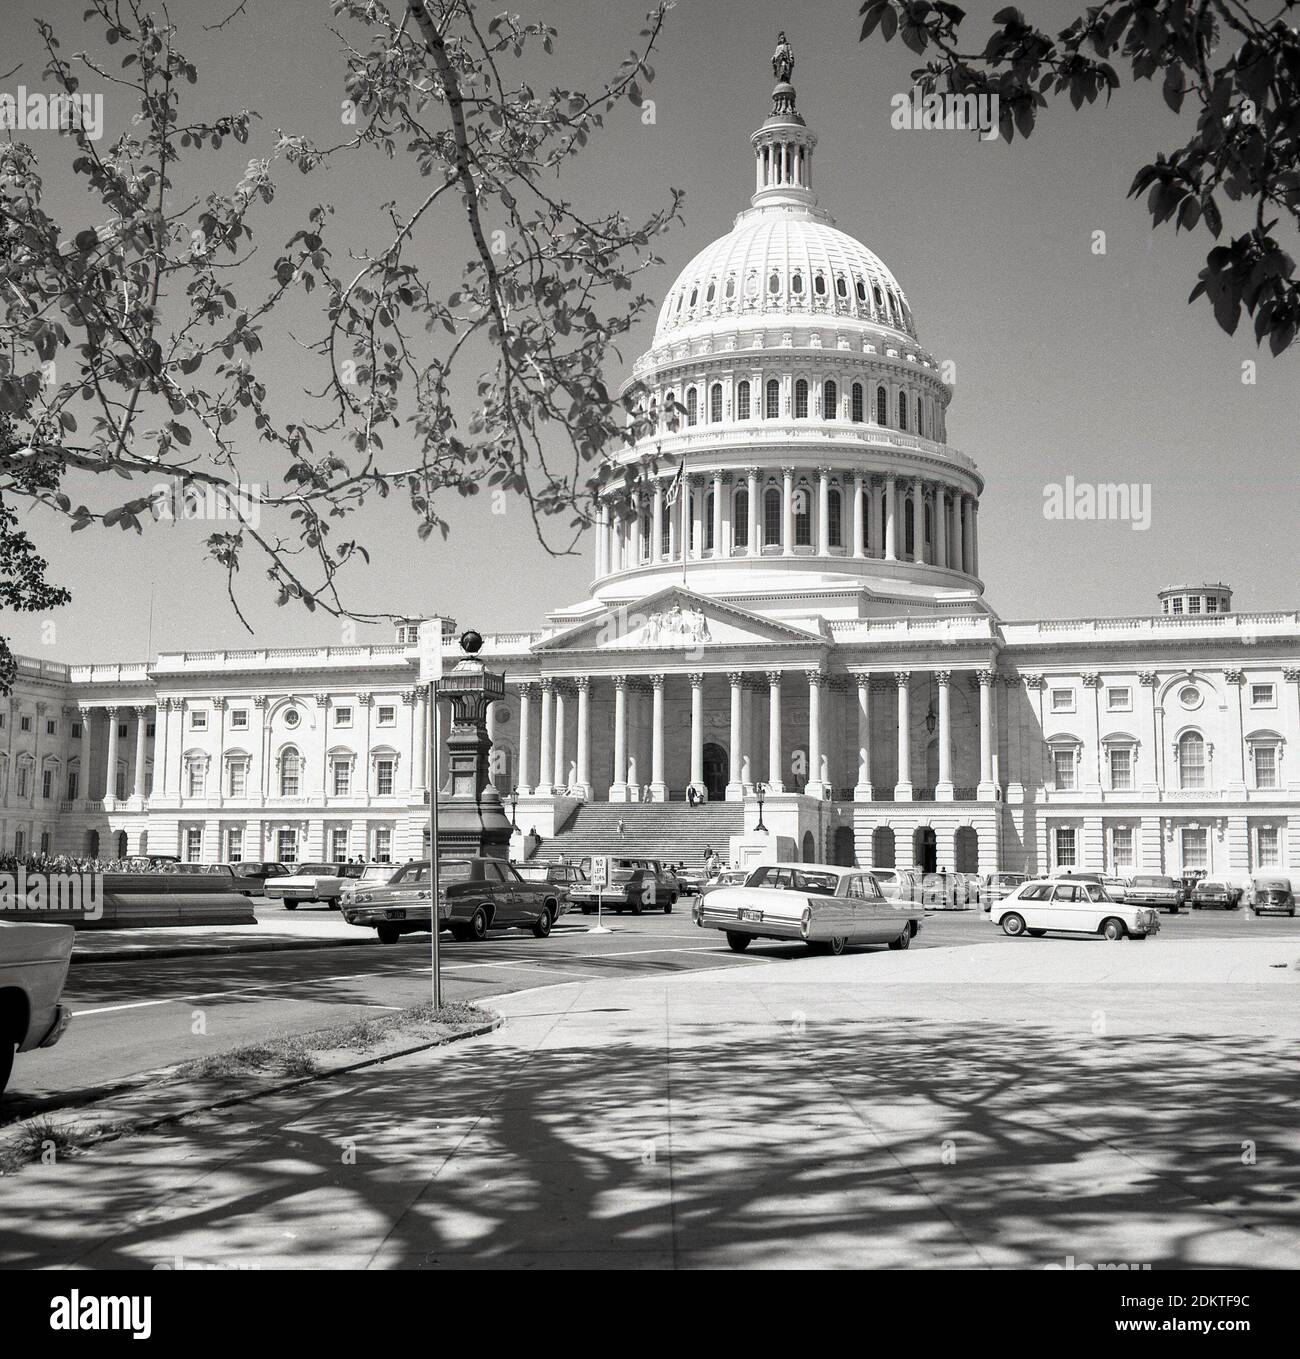 Historische Autos aus der Zeit der 1960er Jahre parkten auf einer Straße am Capitol Hill vor dem Capitol Building der Vereinigten Staaten in Washington DC, USA. Im neoklassizistischen Stil erbaut, mit einer Kuppel und großen Säulen, ist es Sitz des US-Kongresses, der Legislativabteilung der Bundesregierung und beherbergt die Kammern des Oberkörpers, des Senats und des Unterkörpers, des Repräsentantenhauses, die beiden Organe, die den Legislativzweig der amerikanischen Regierung bilden. Stockfoto